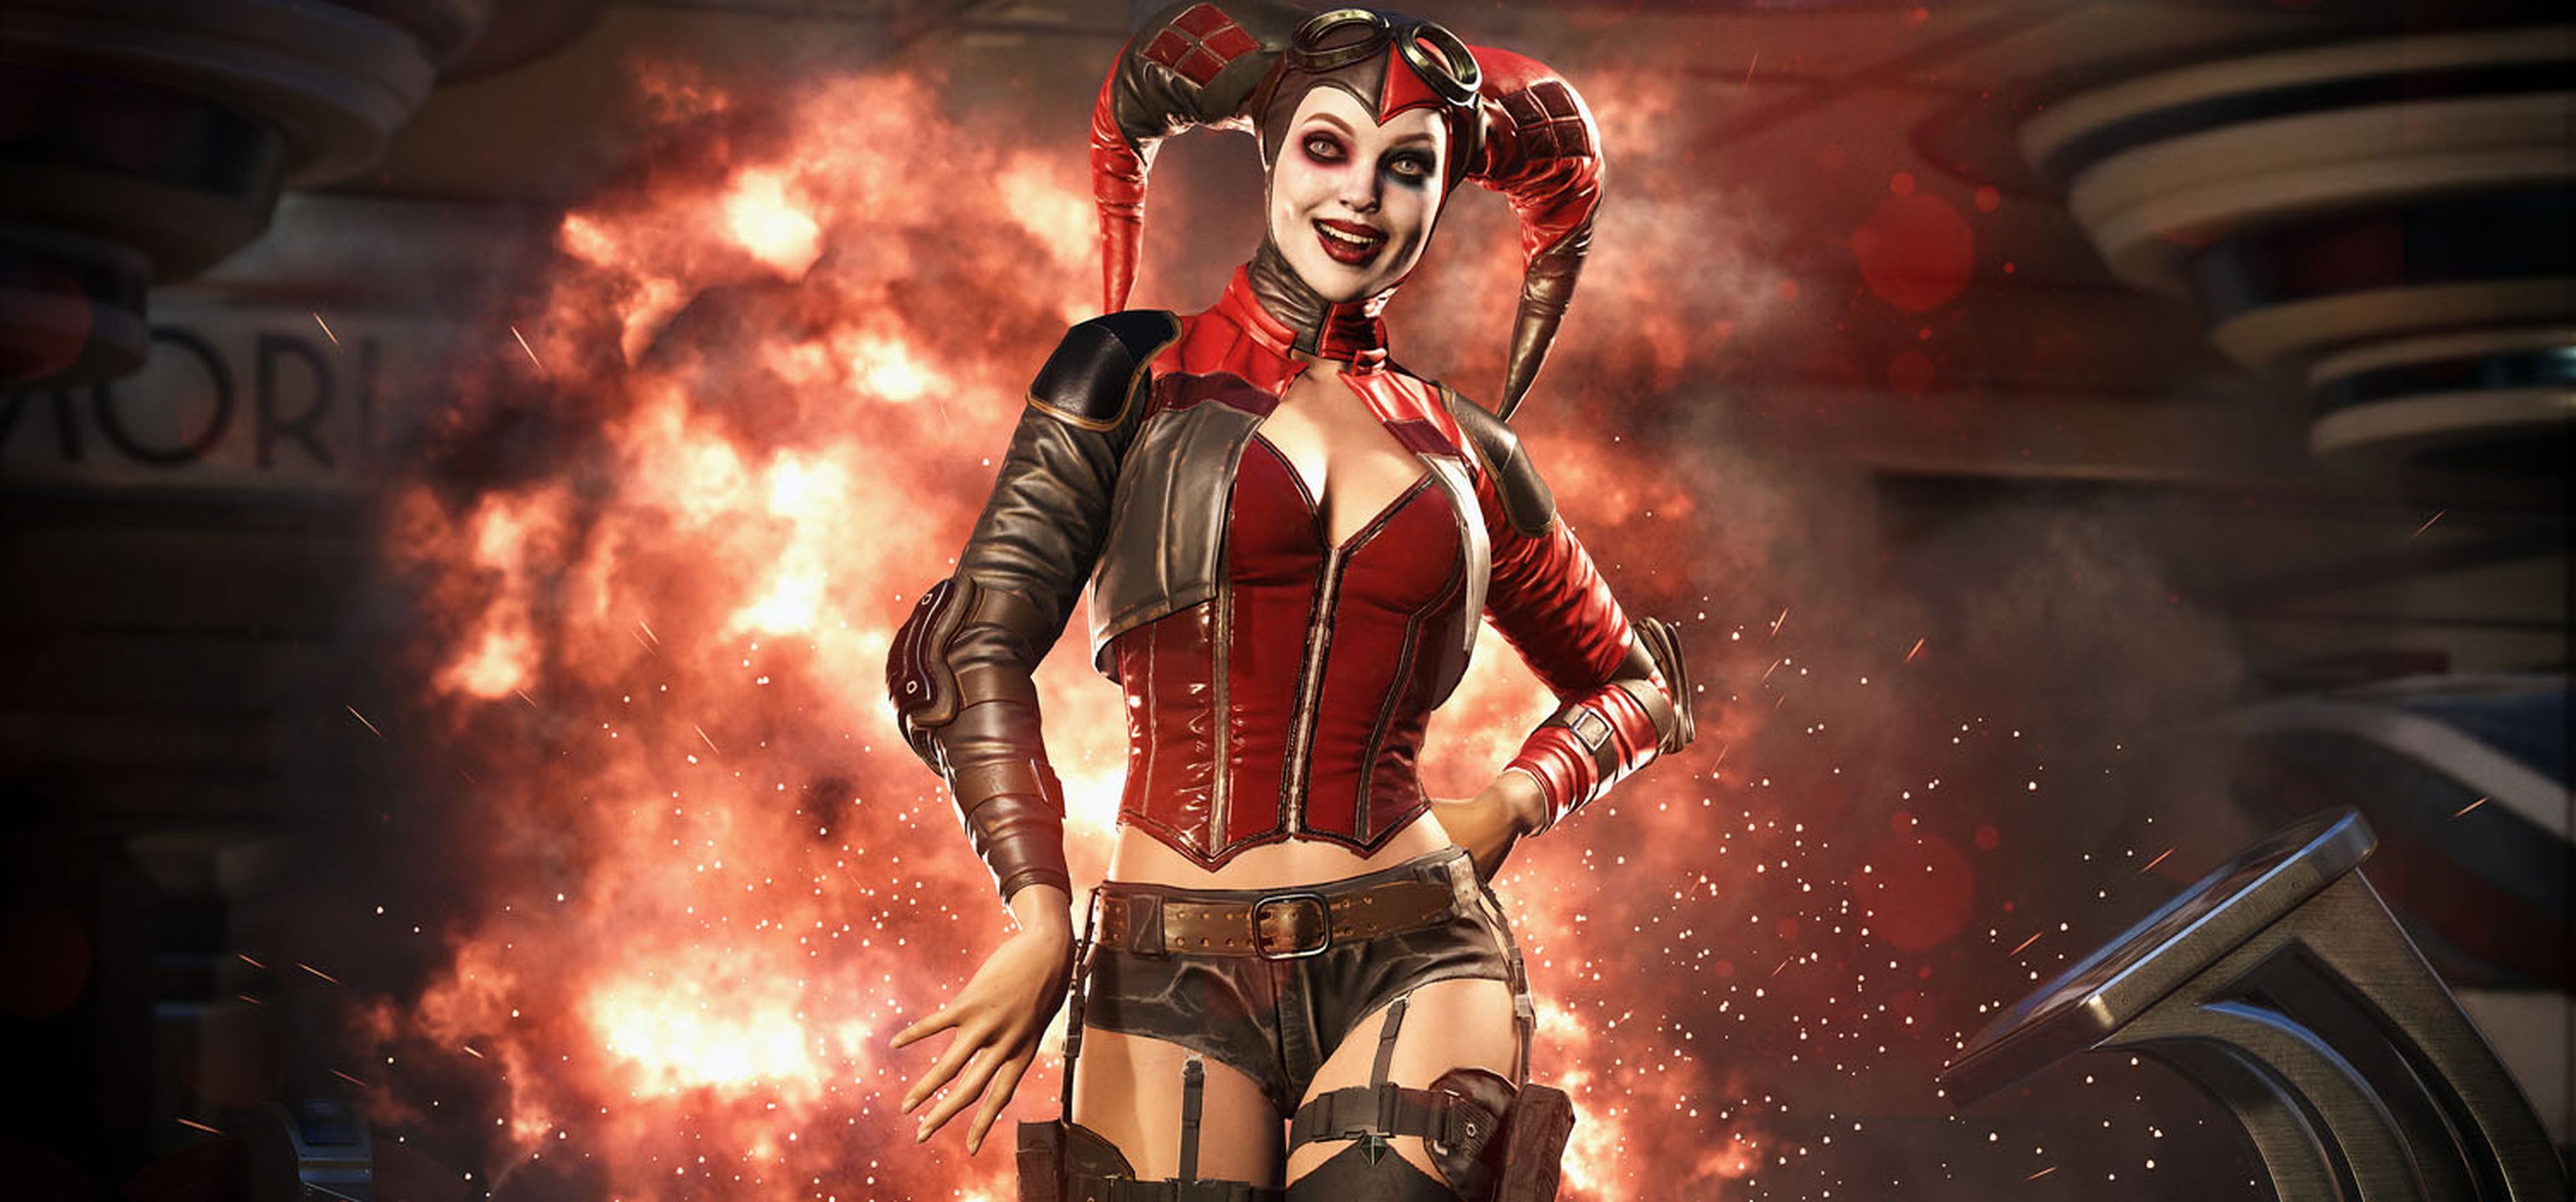 Injustice 2 Harley Quinn